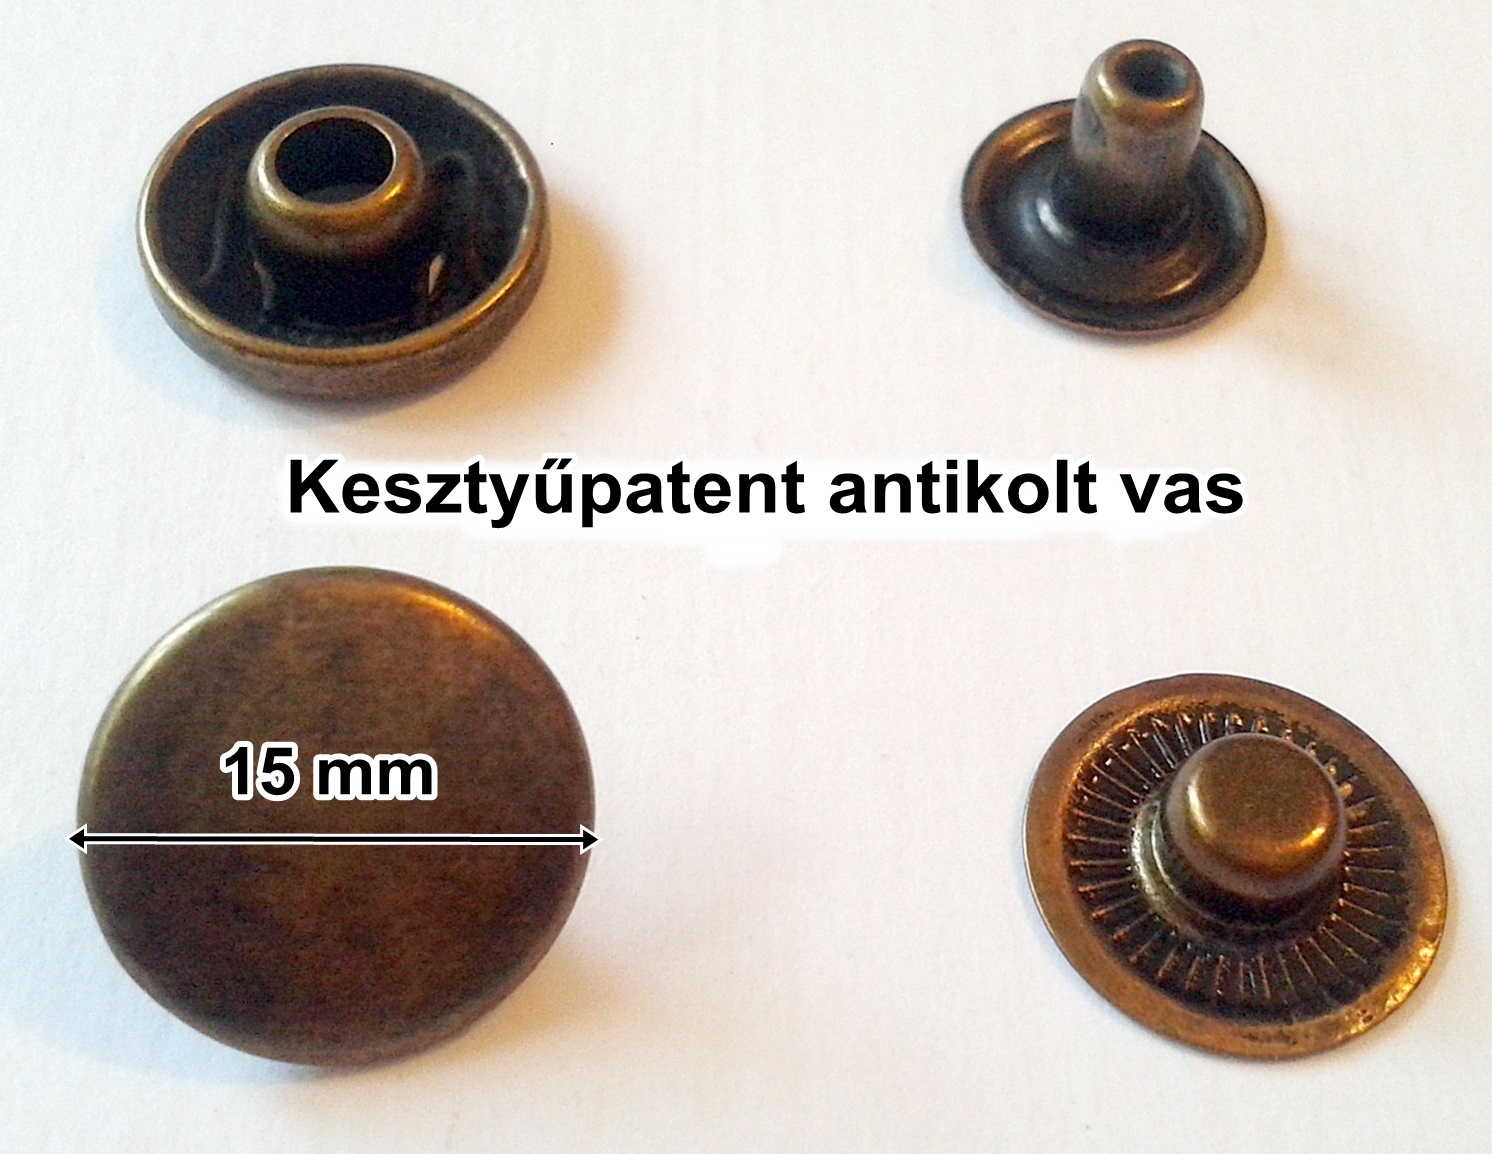 Kesztyűpatent 15 mm vas anyagú, antikolt patent sima kerek, 31 Ft/szett. 